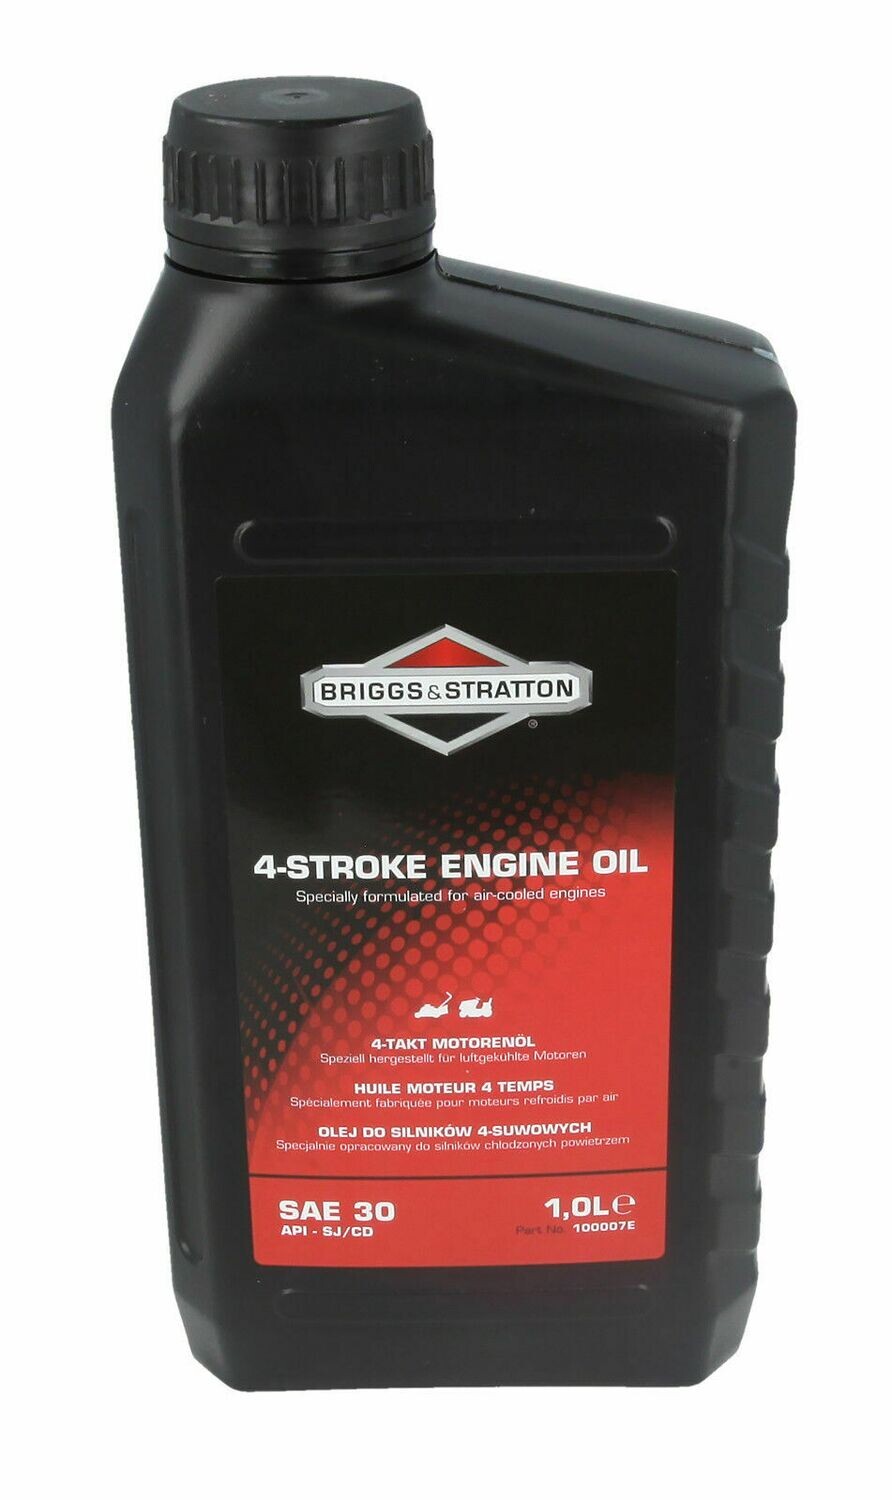 Briggs &amp; Stratton 4-Stroke Engine Oil 1.0L